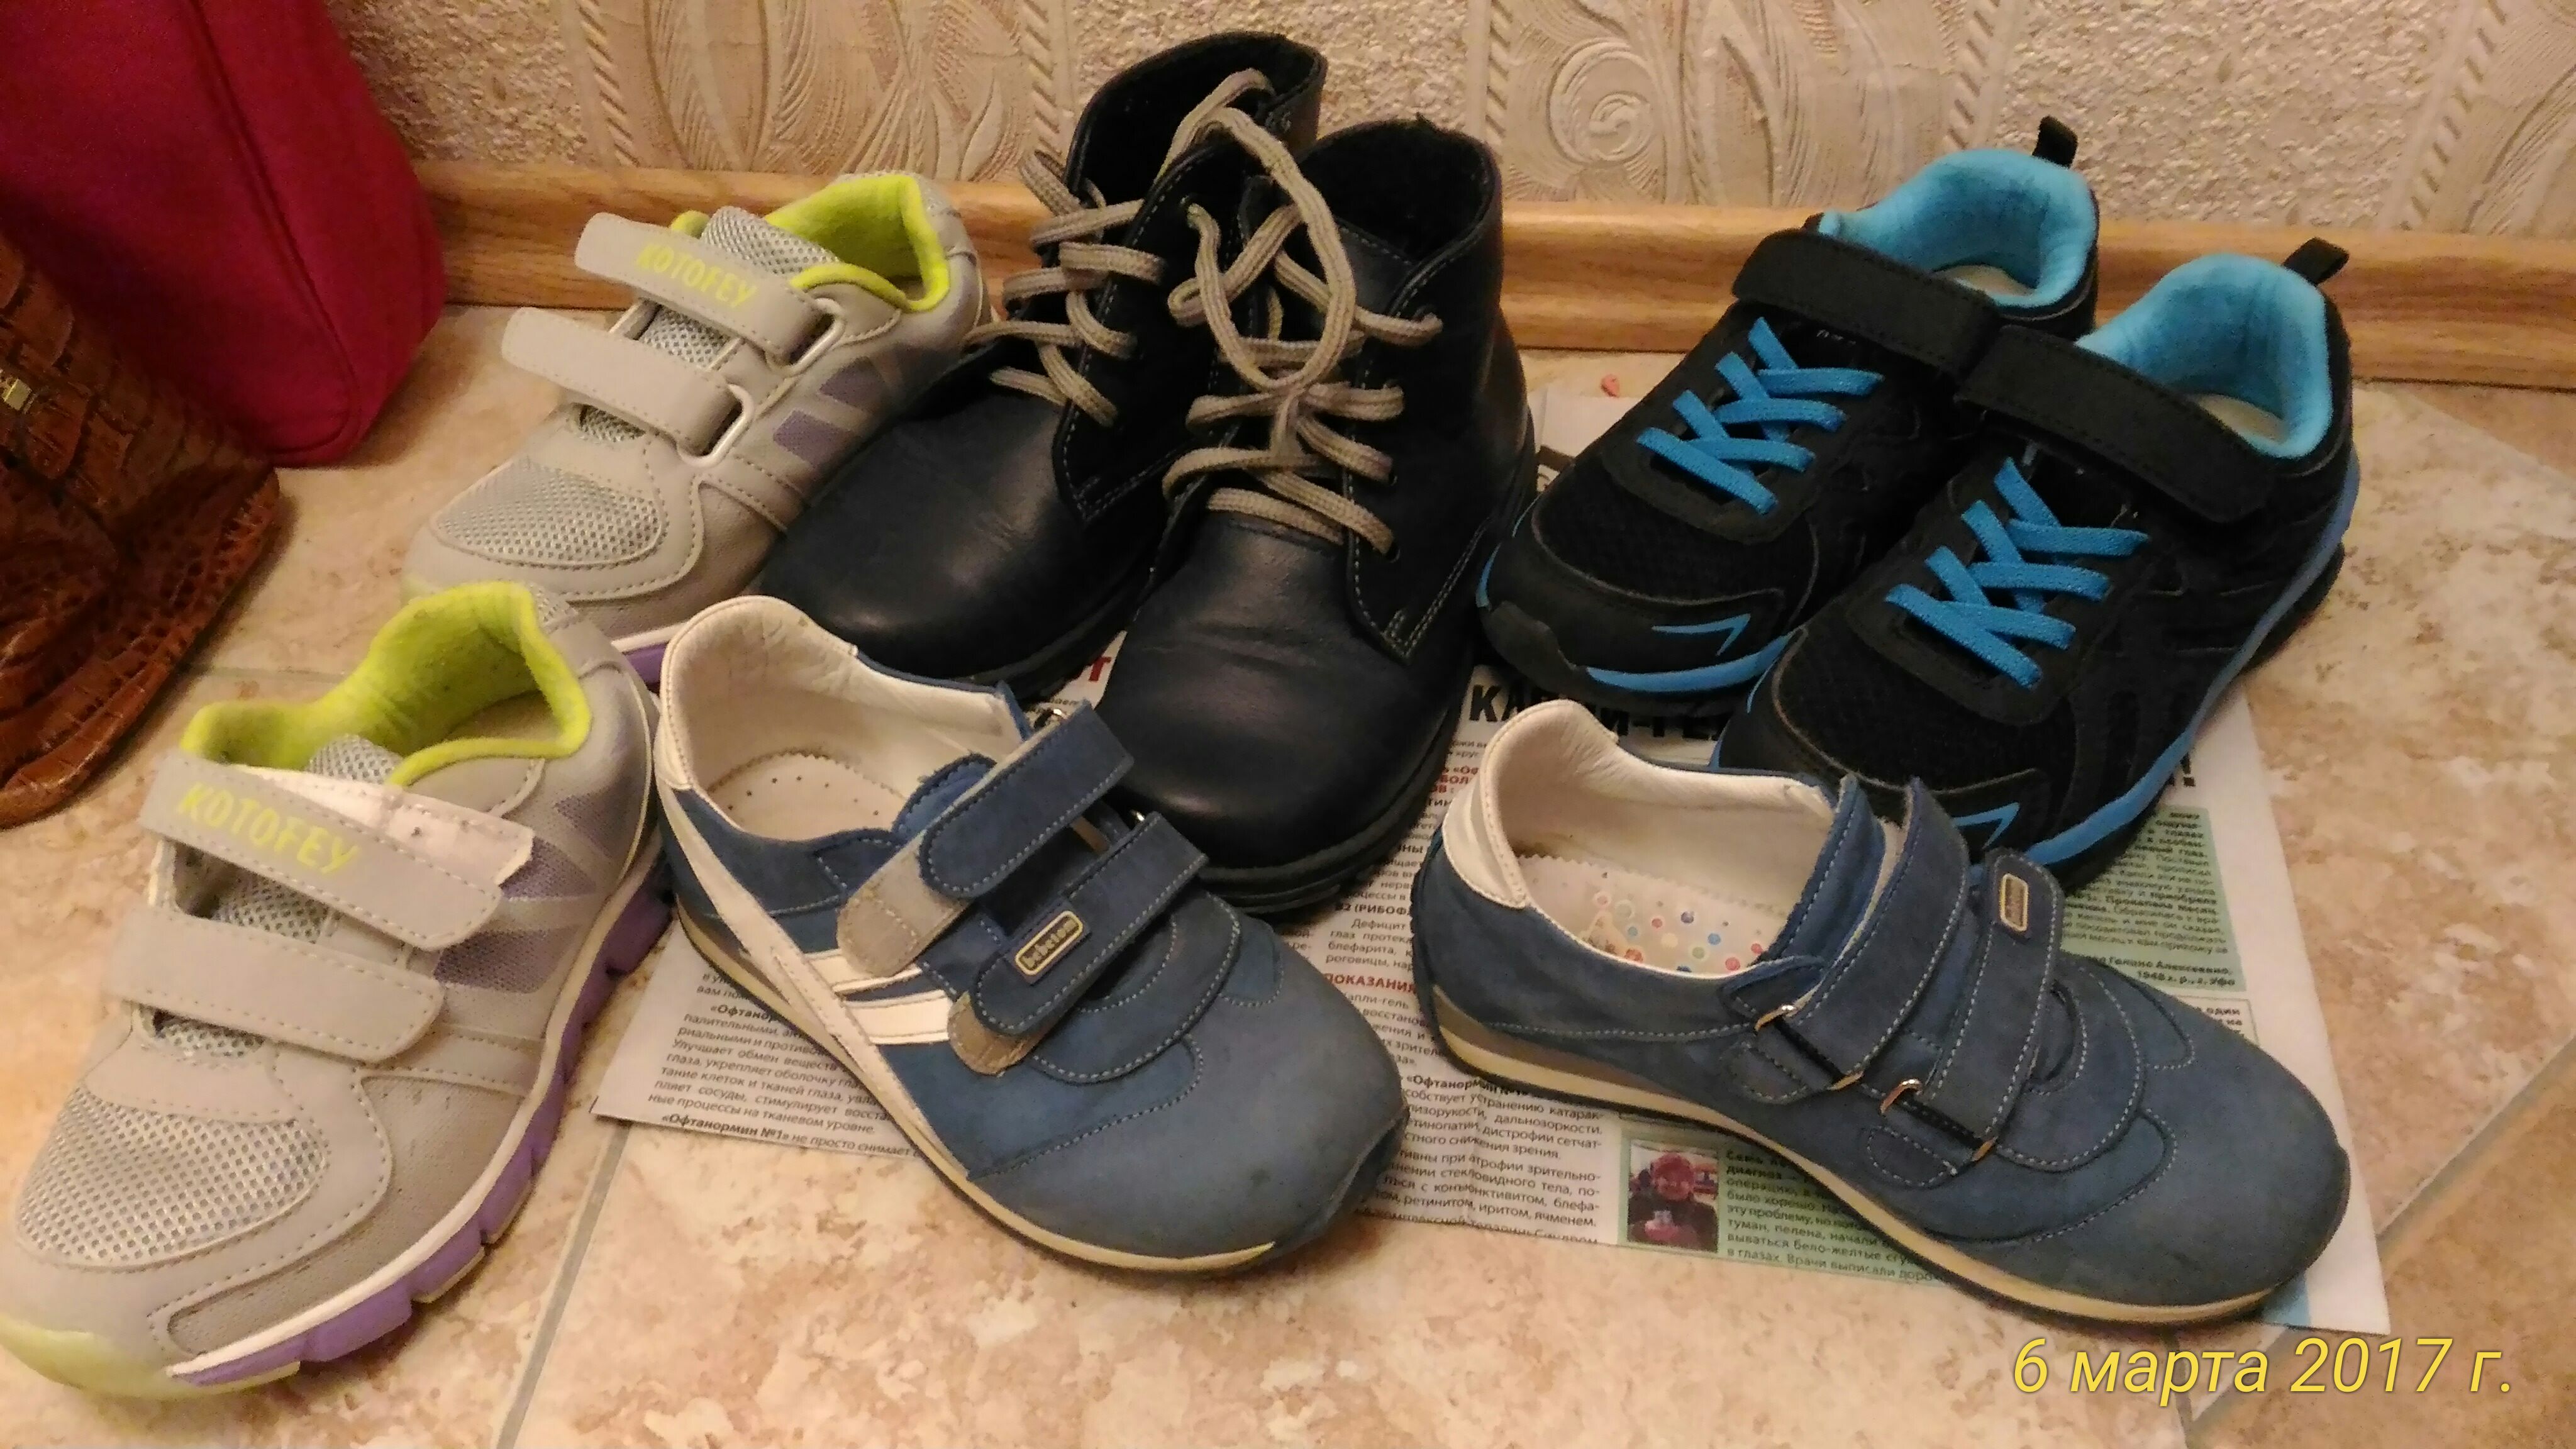 Продажа кроссовок на авито. Лель ботинки зима замша для мальчика. Детская обувь б у. Детские кроссовки на авито. Кроссовки 90-х годов с фиолетовым овалом.